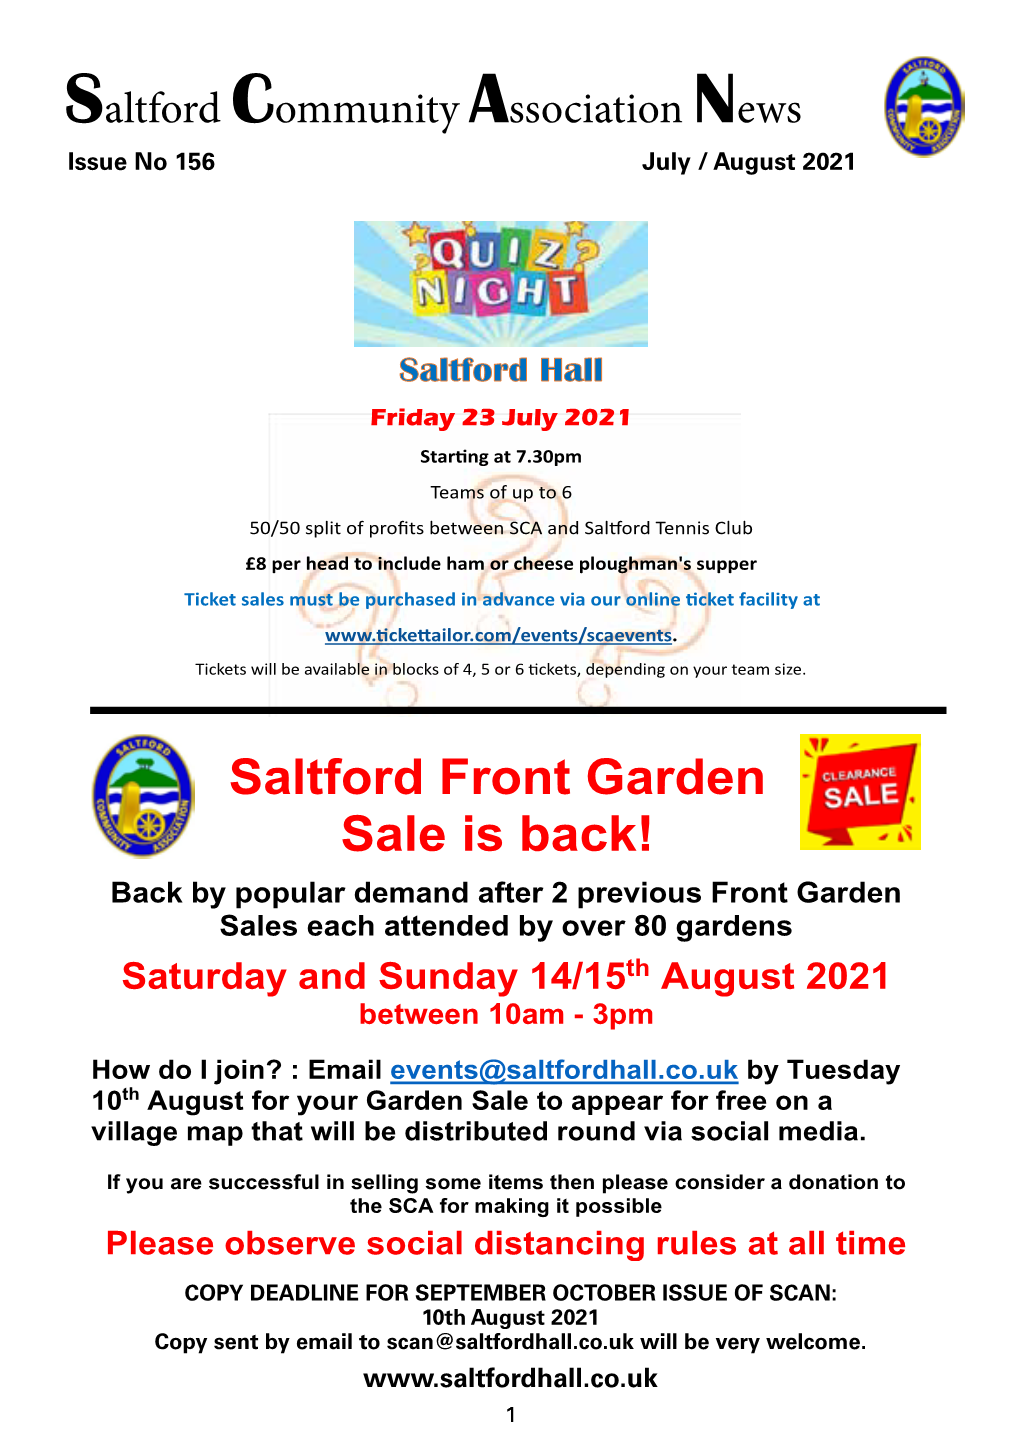 Saltford Front Garden Sale Is Back!